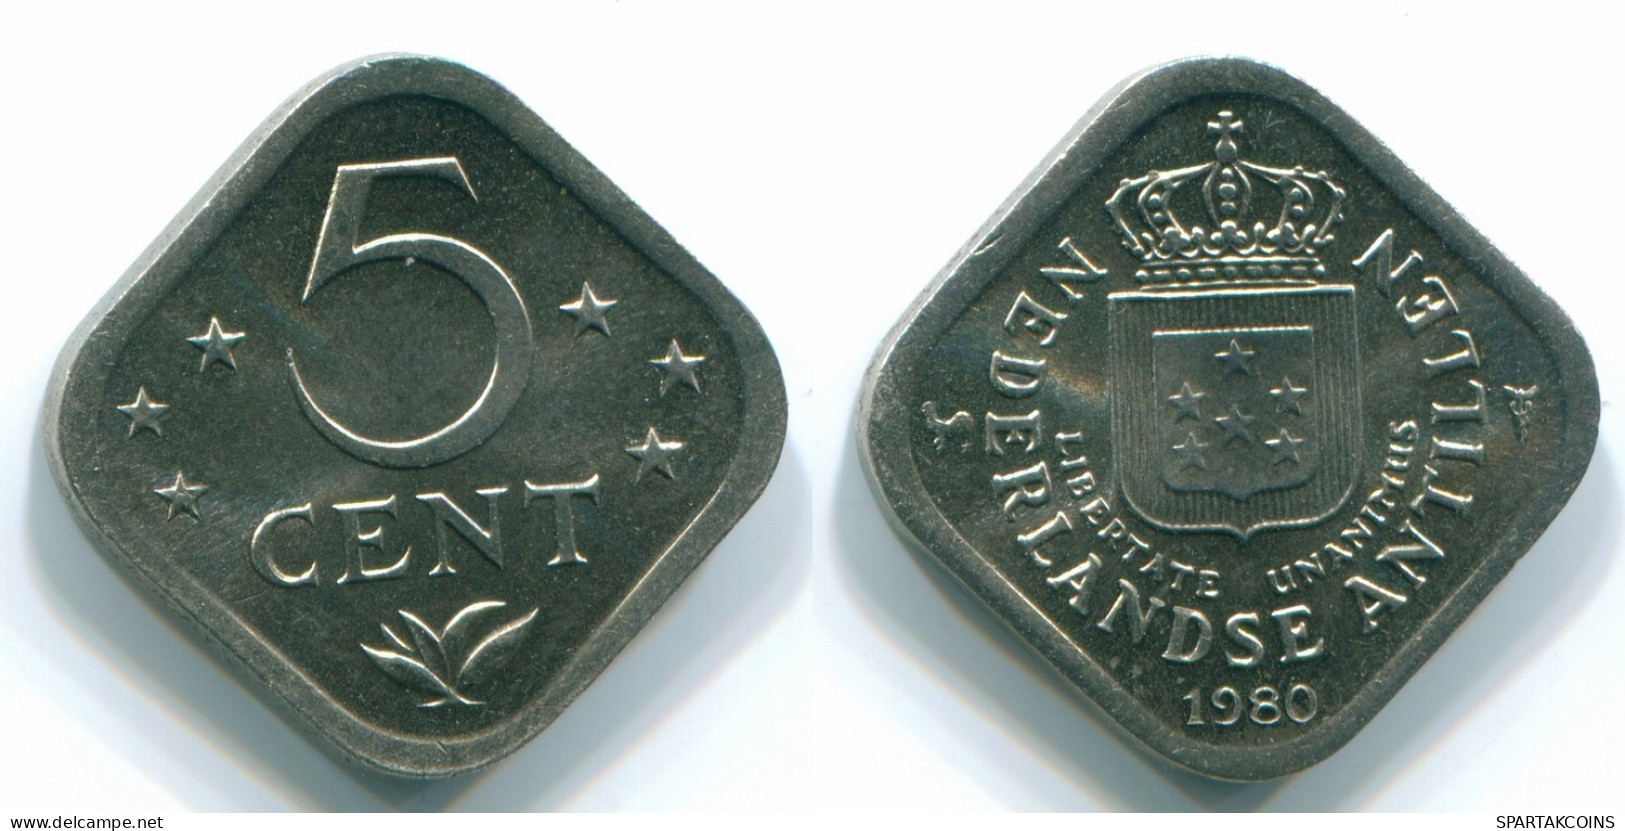 5 CENTS 1980 NETHERLANDS ANTILLES Nickel Colonial Coin #S12311.U.A - Niederländische Antillen